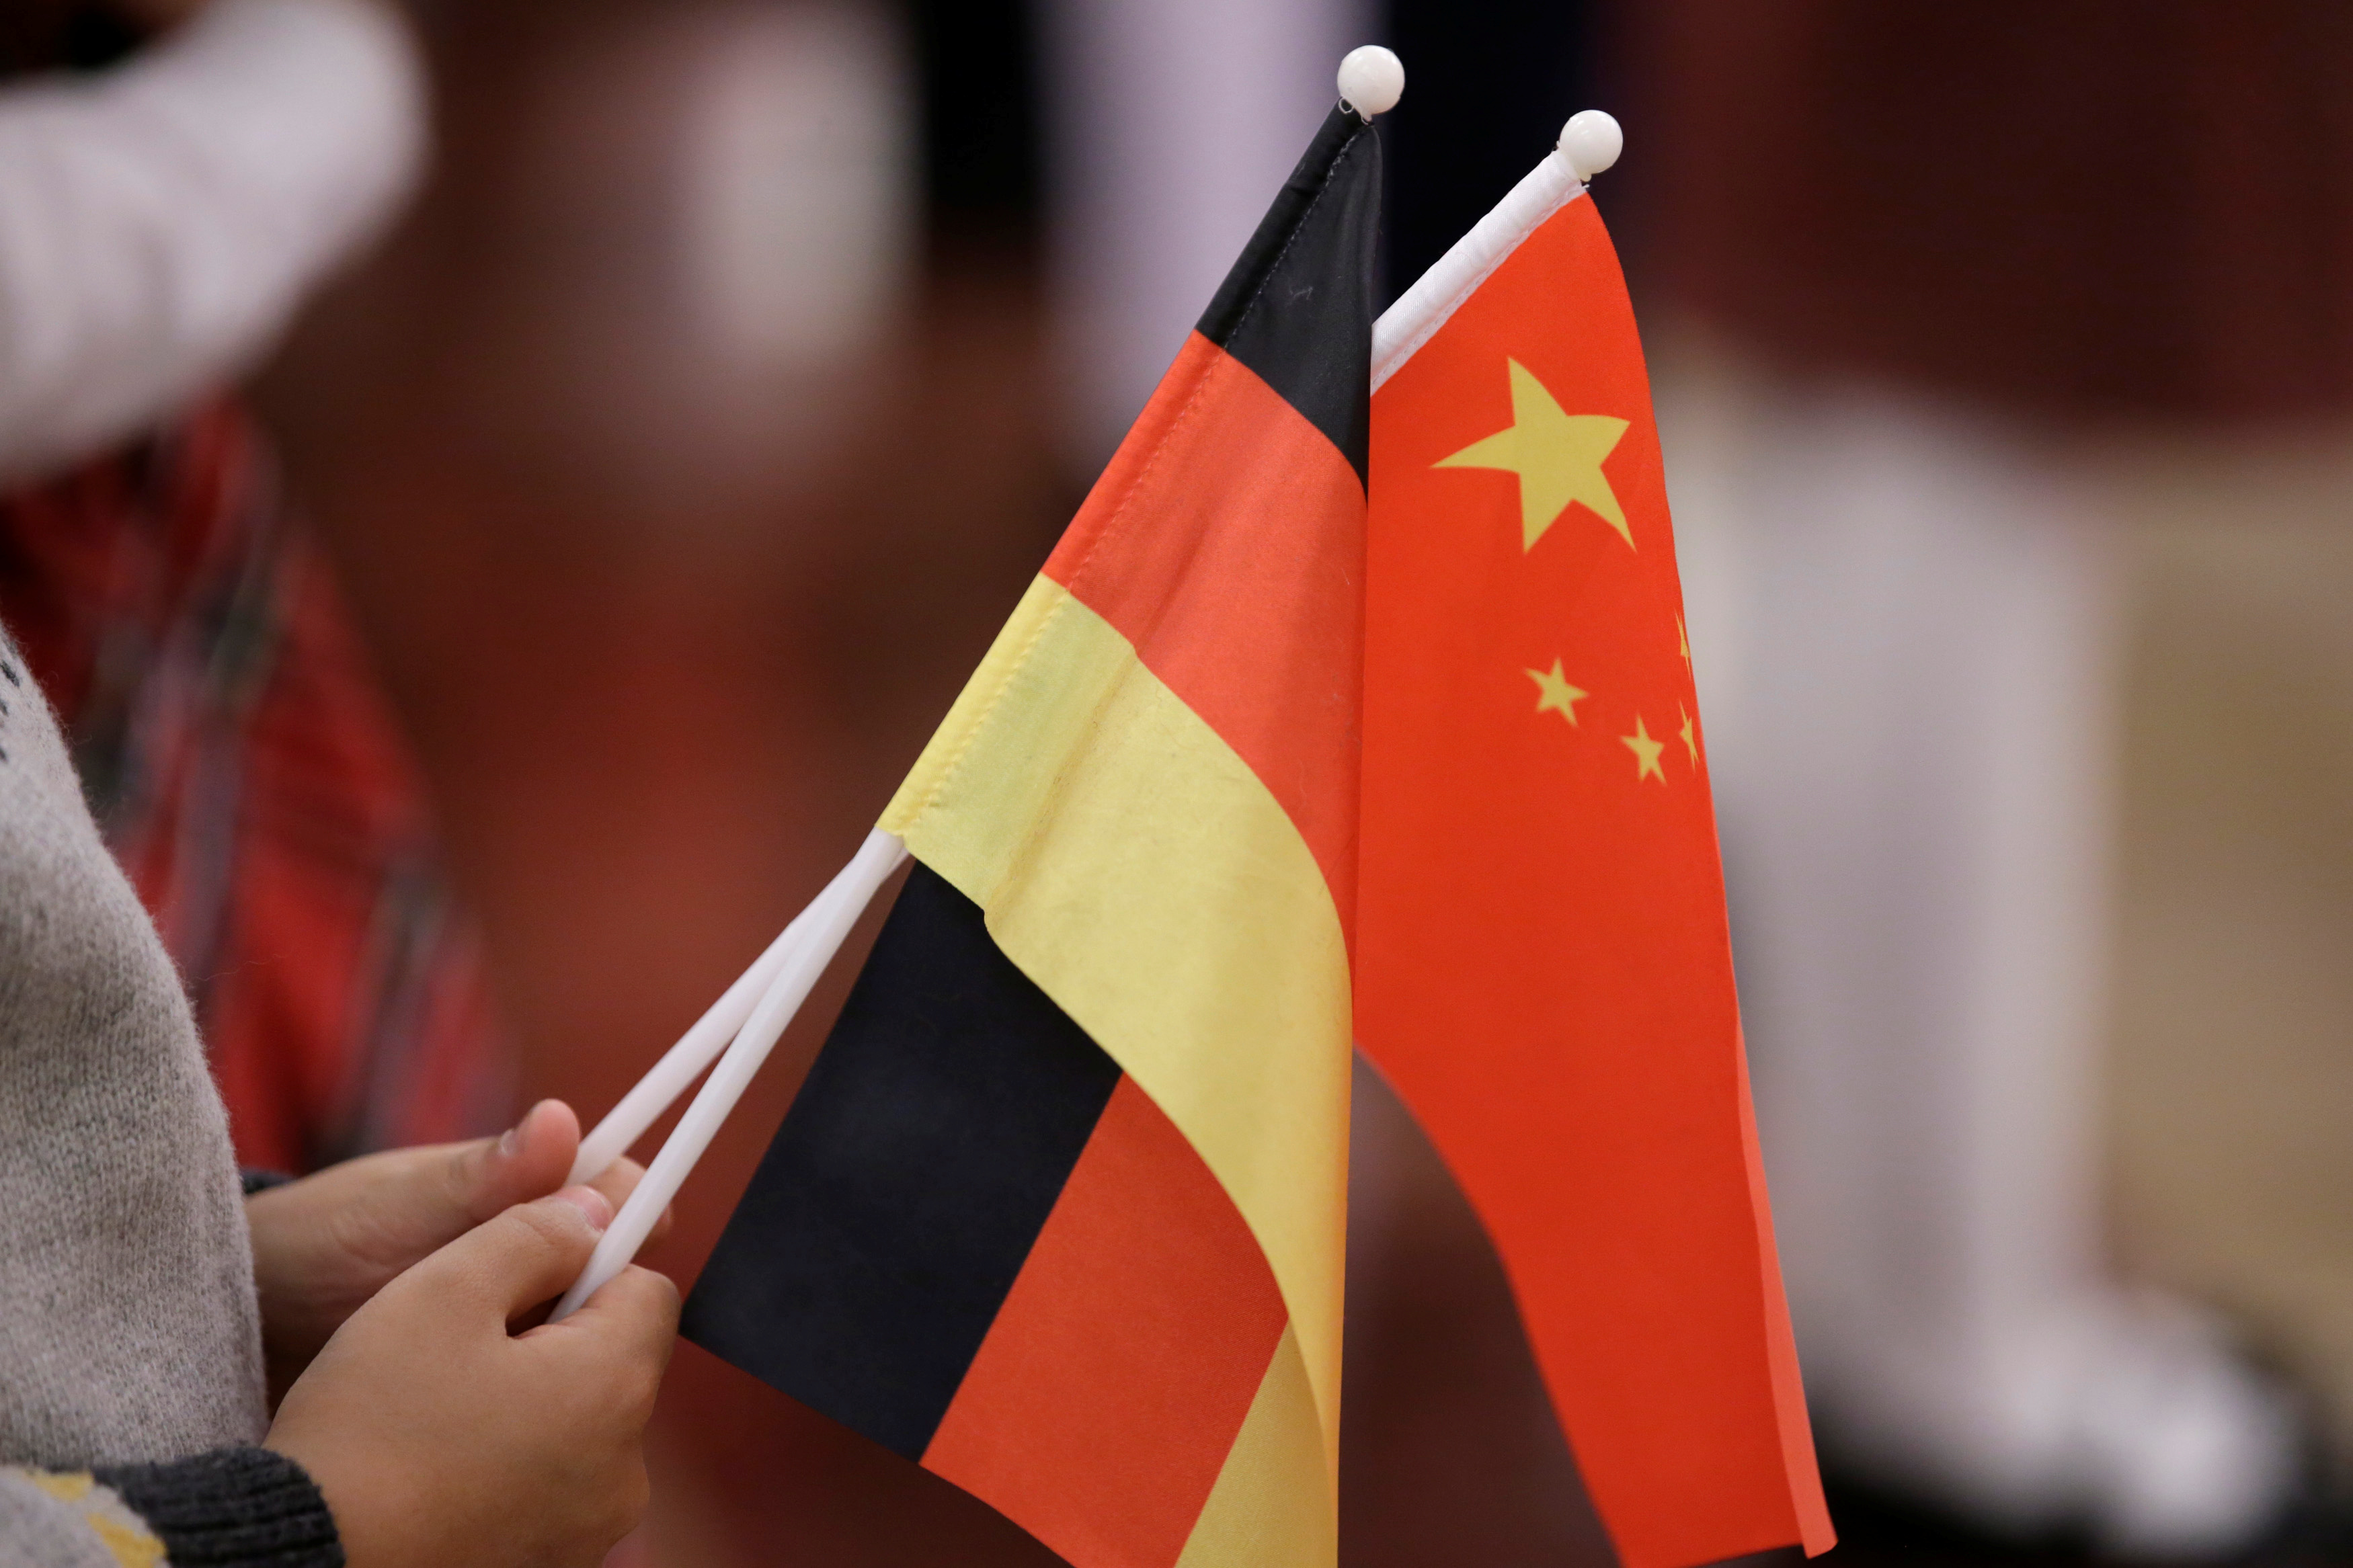 german to visit china